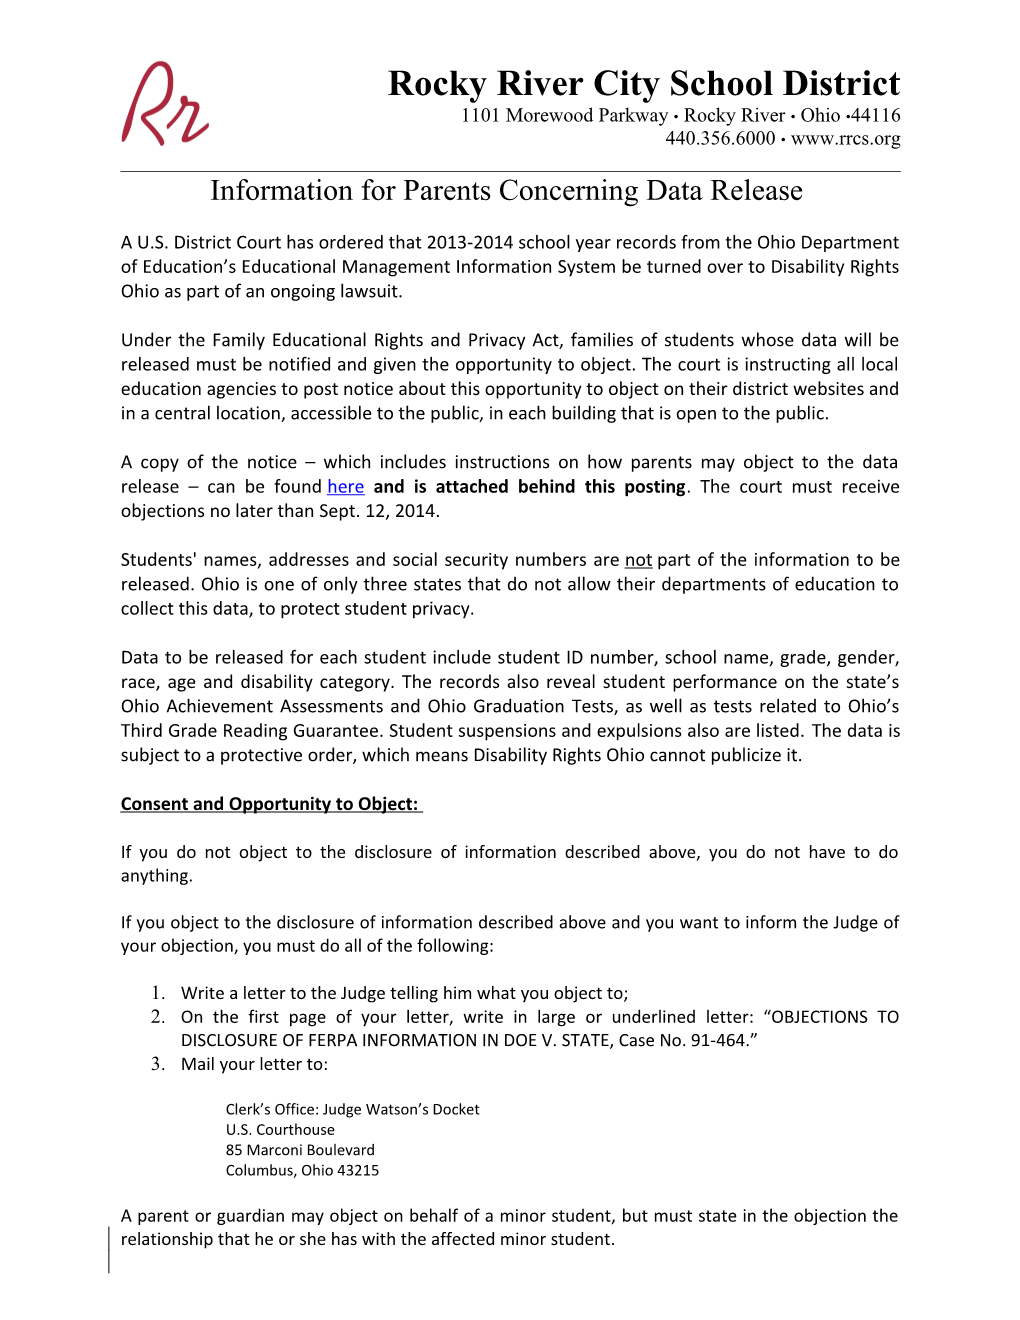 Information for Parents Concerning Data Release